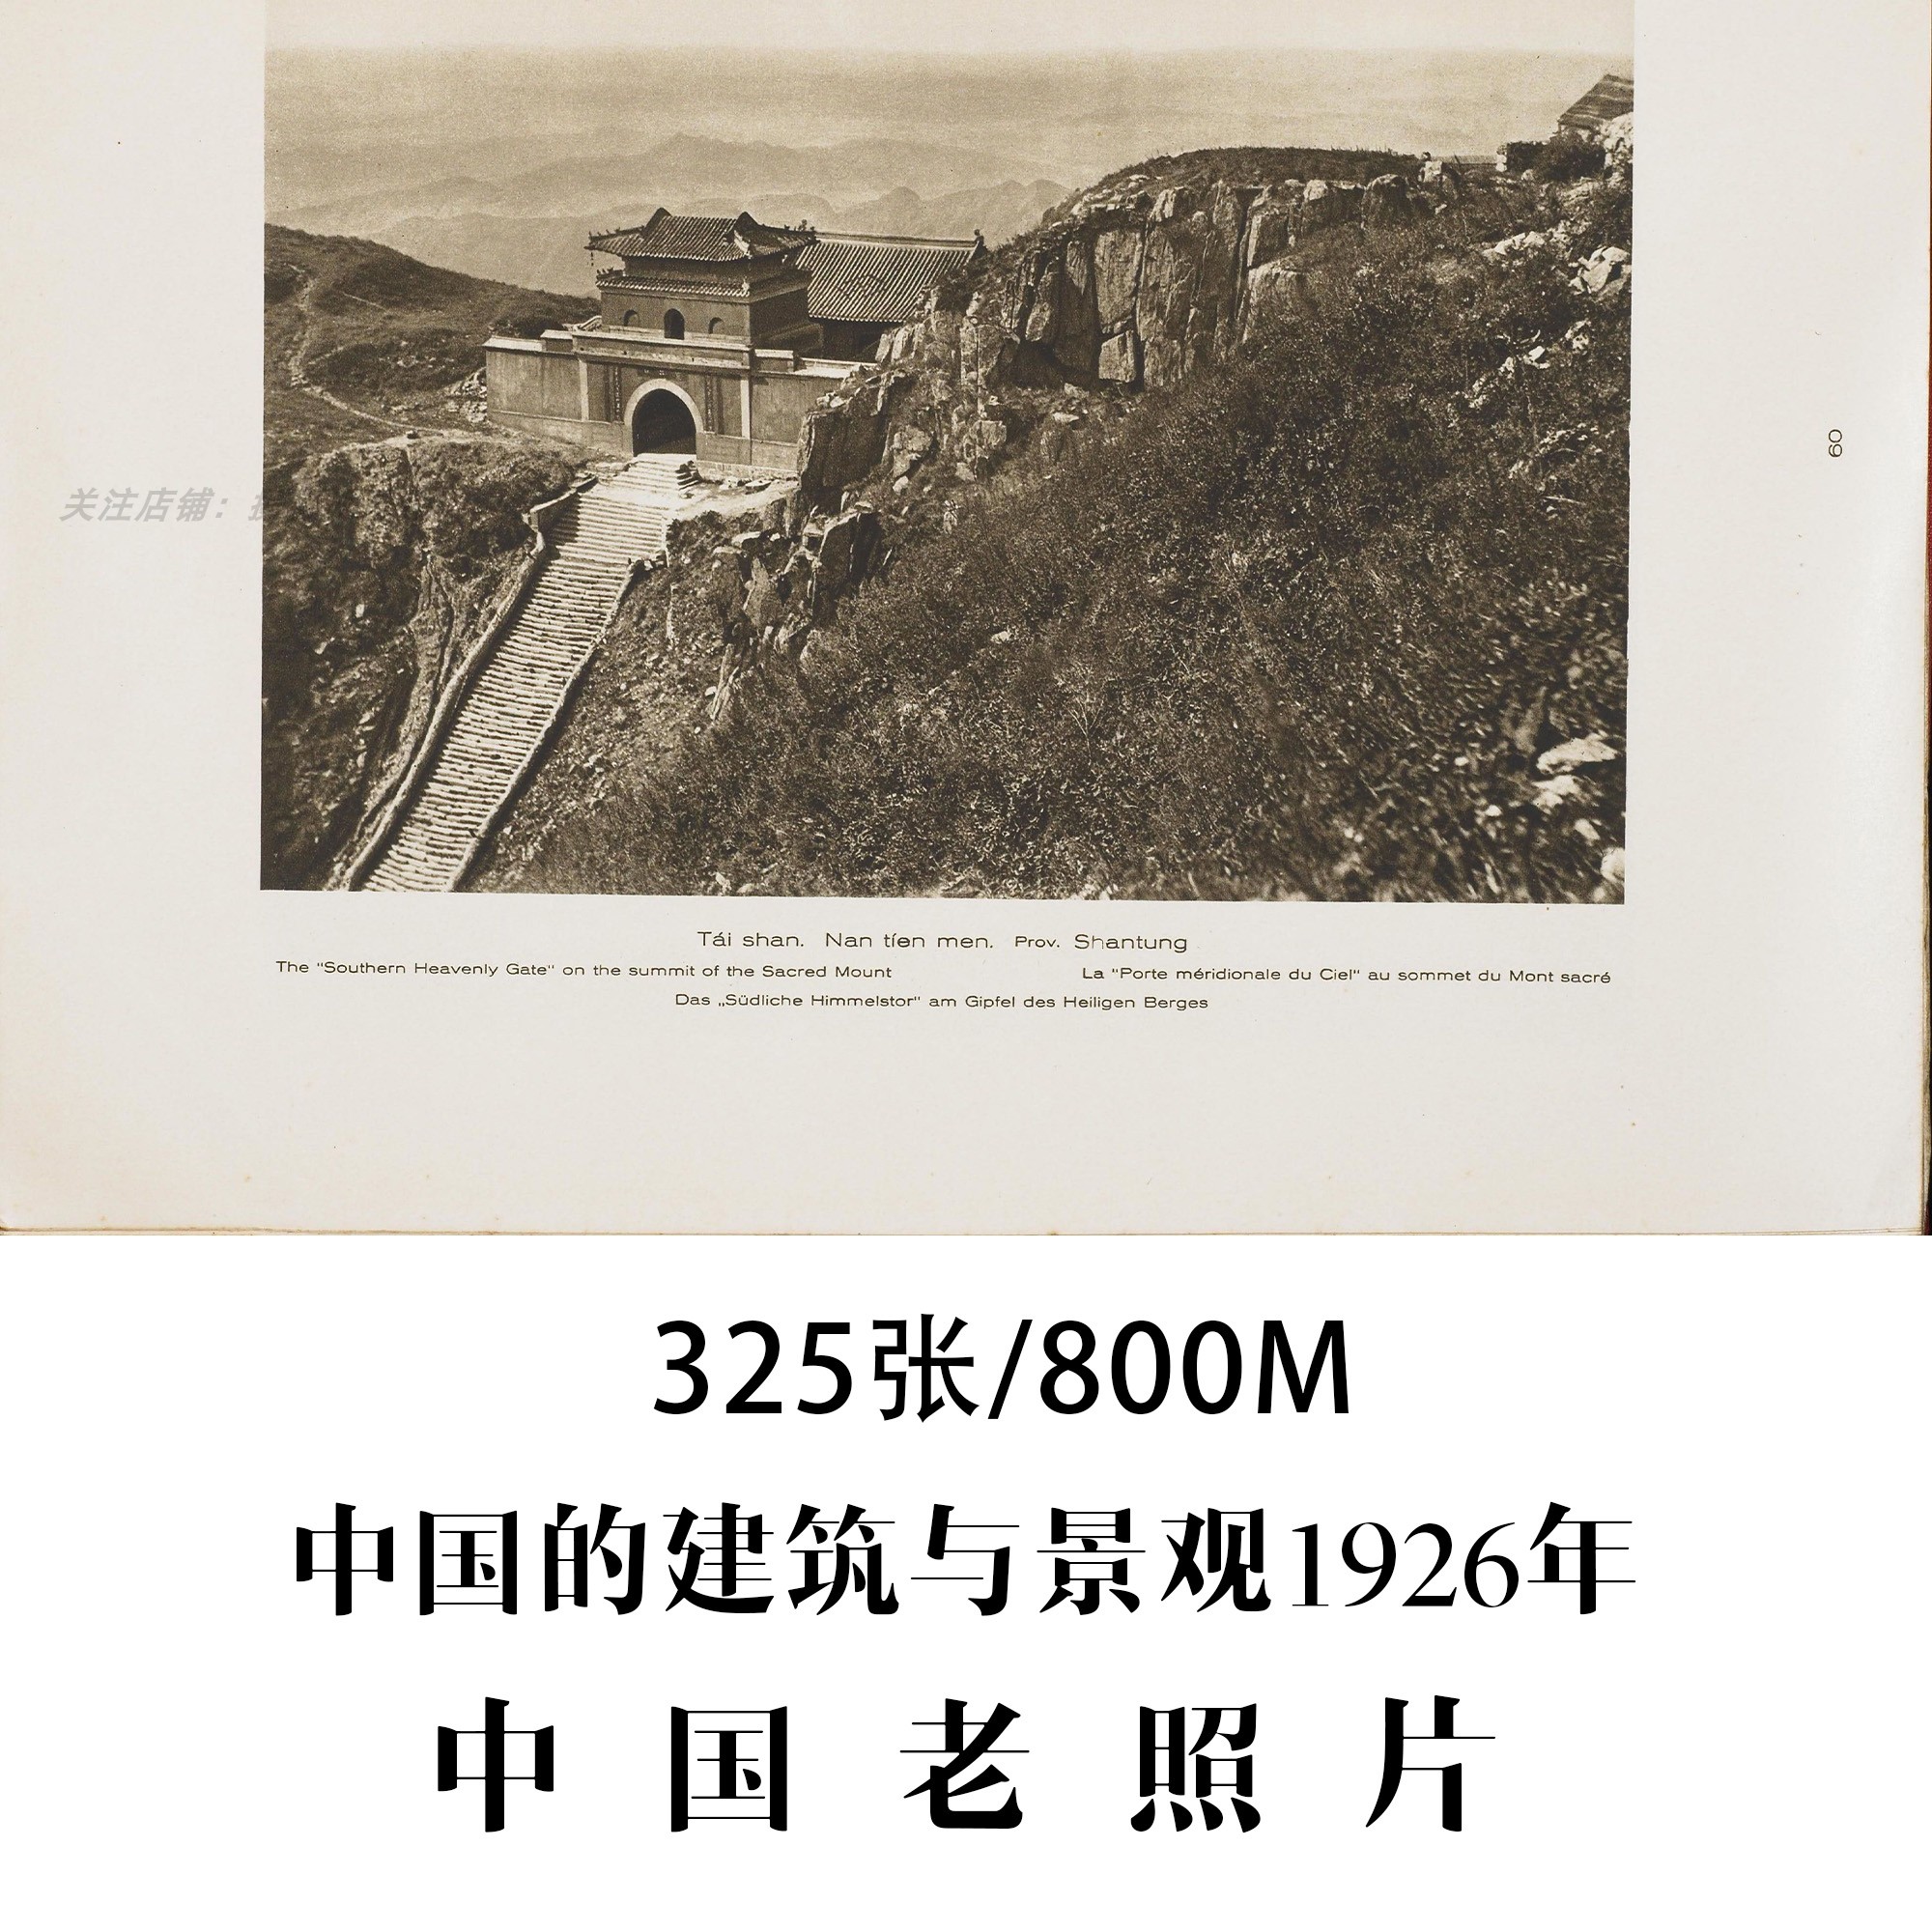 中国老照片中国的建筑与景观恩斯特柏石曼1926年摄影作品电子图片